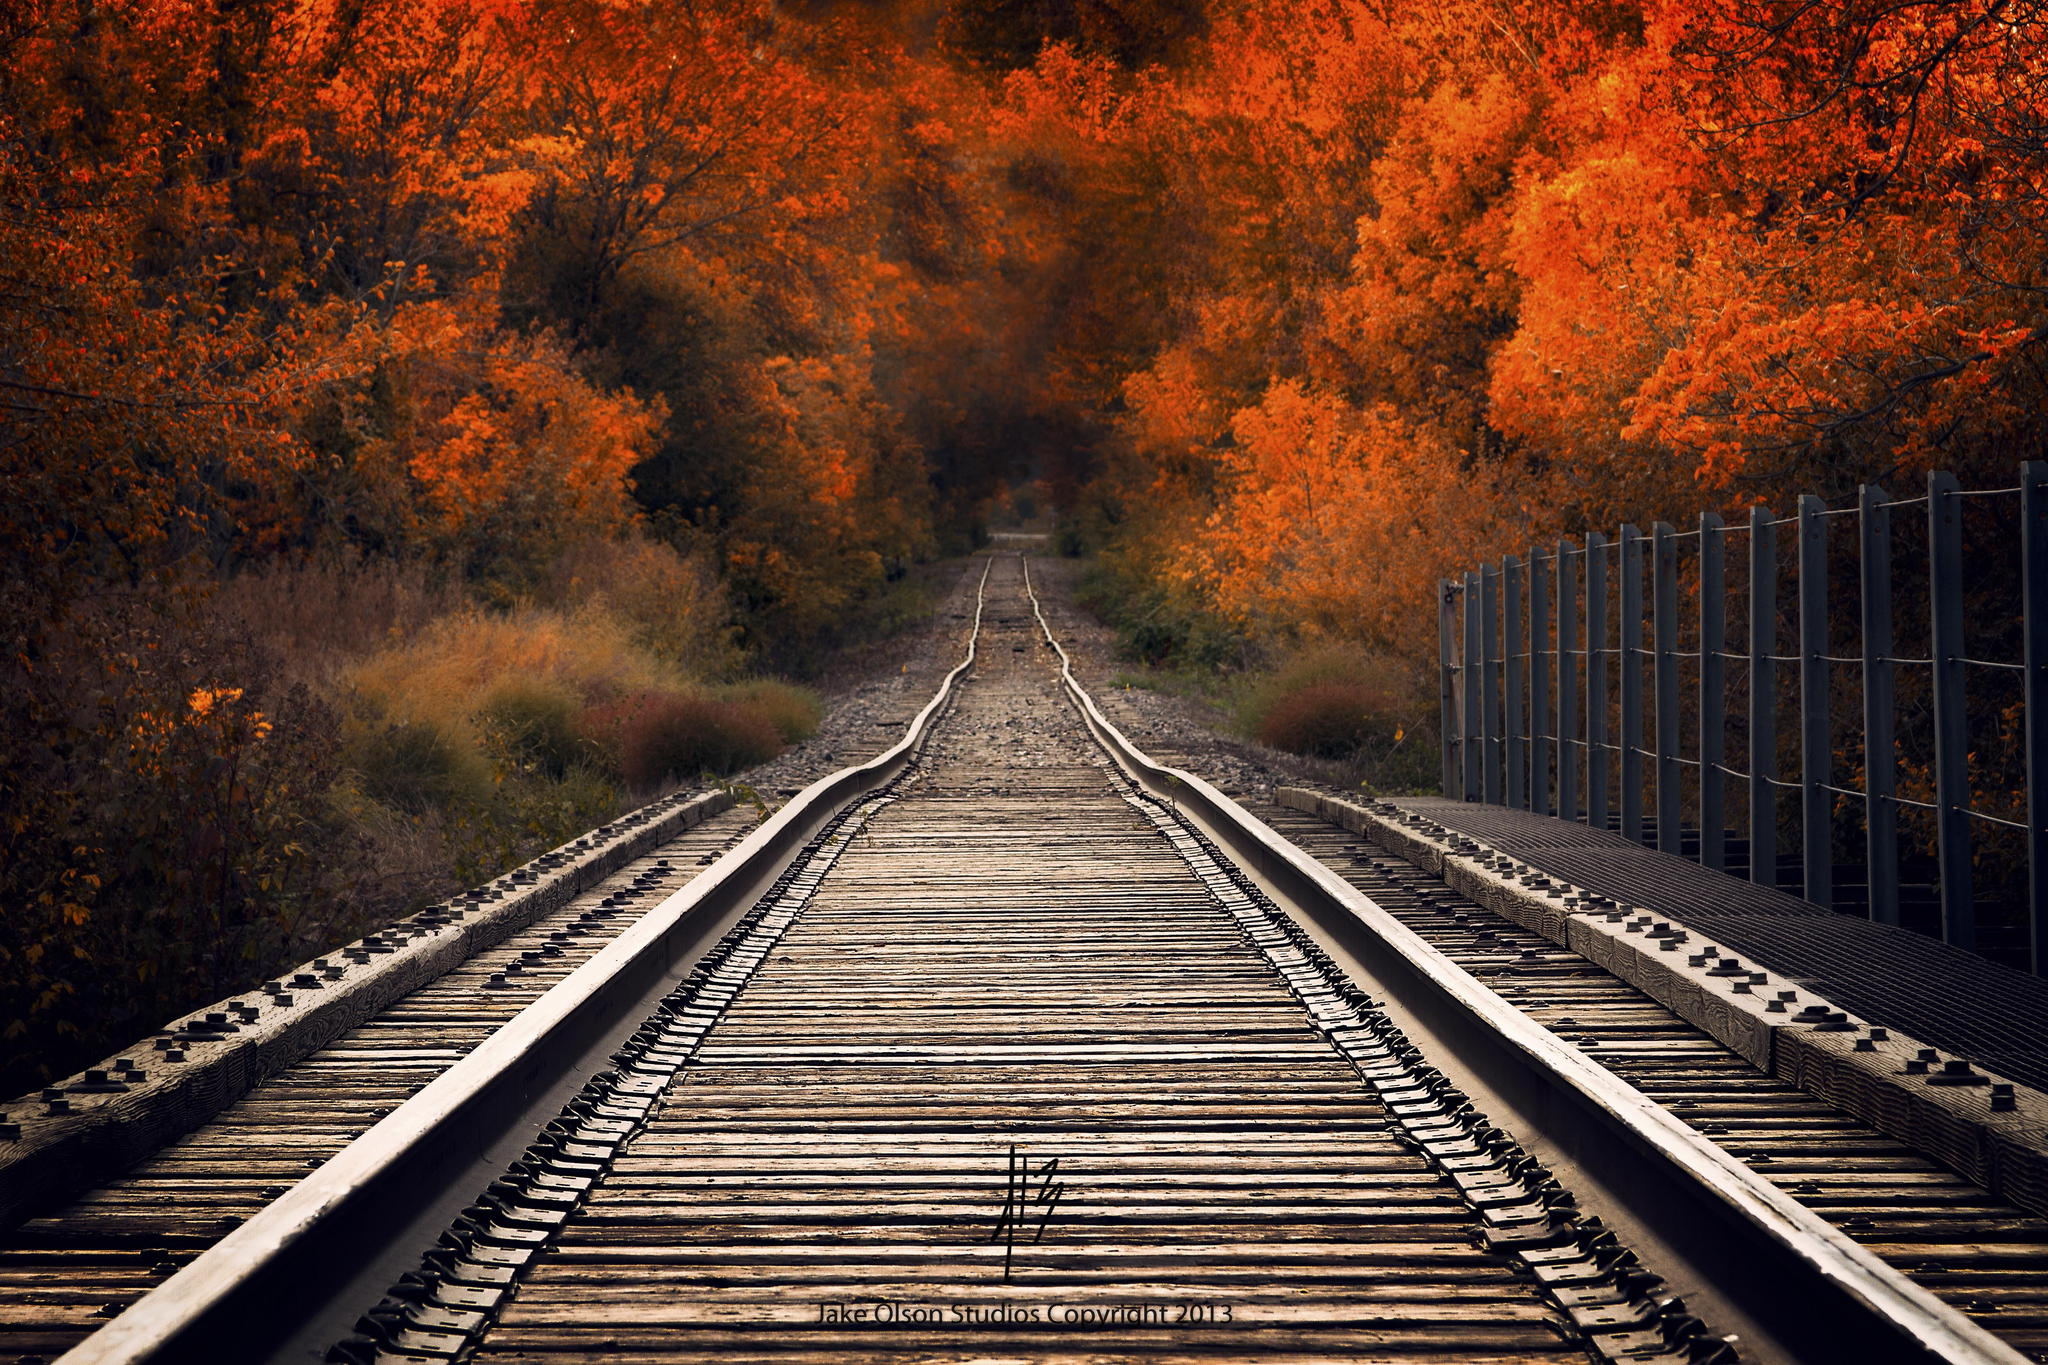 spacer w dziką część miasta,wzdłuż torów kolejowych,przemierzając kolorowe liście,czując zapach dymu i obserwując od czasu do czasu odlatujące ptaki